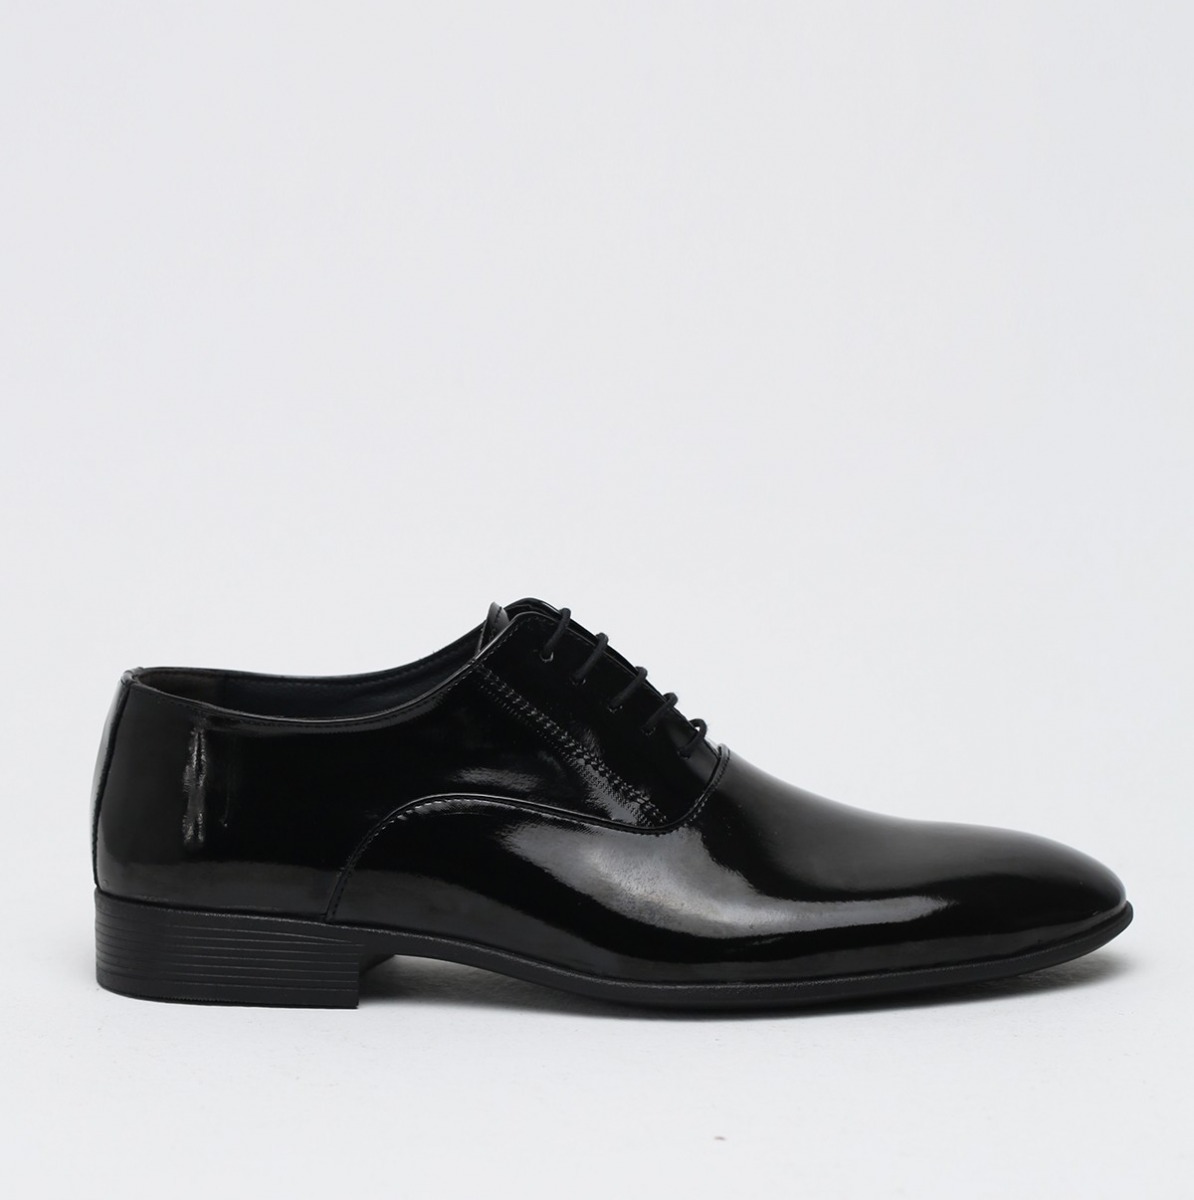 Flo Siyah Erkek Klasik Ayakkabı 1009-19-112014. 3